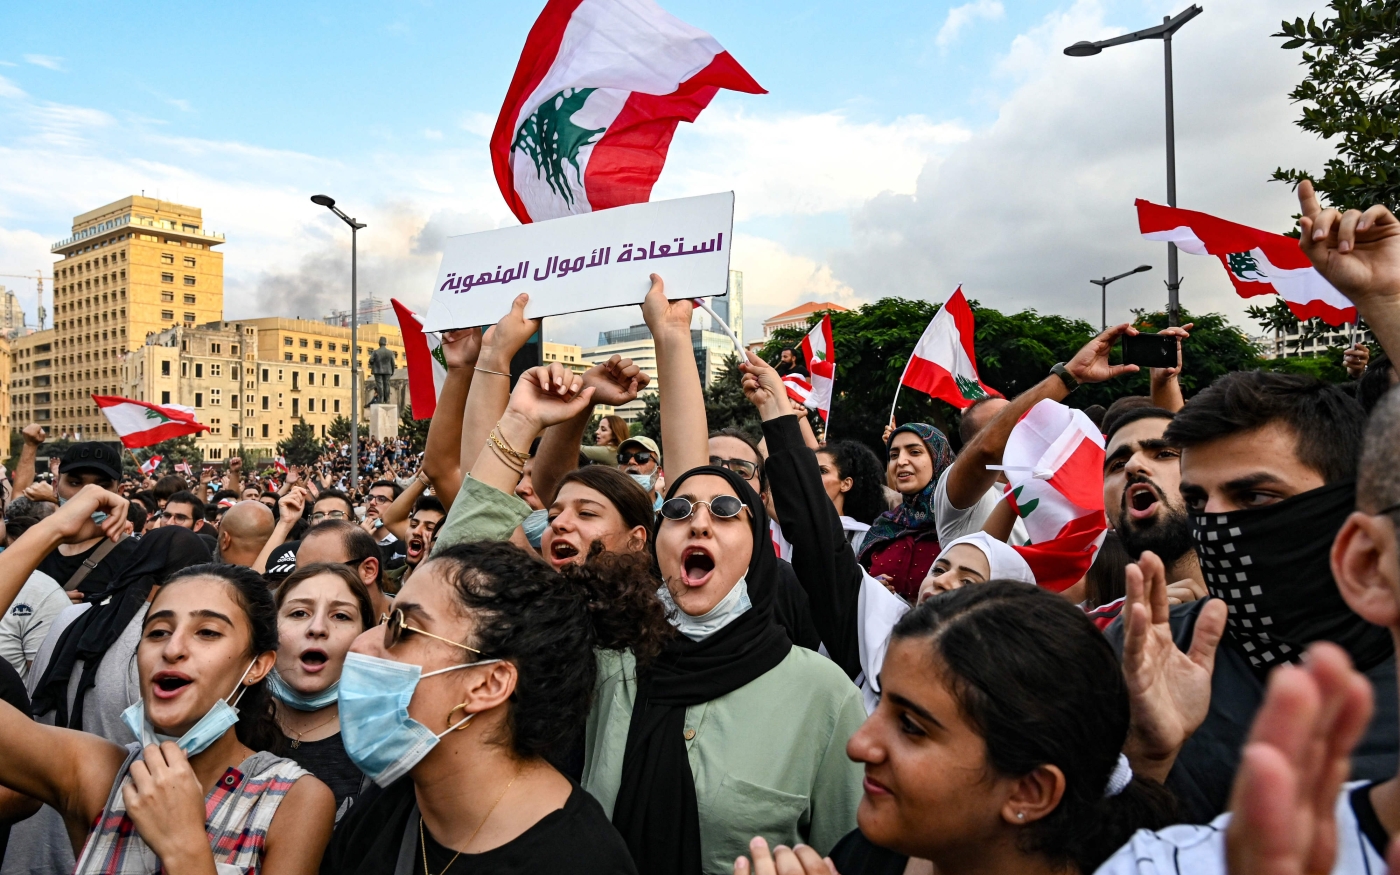 De jeunes manifestants chantent ensemble sur la place Riad el-Solh de Beyrouth, en octobre 2019 (AFP)